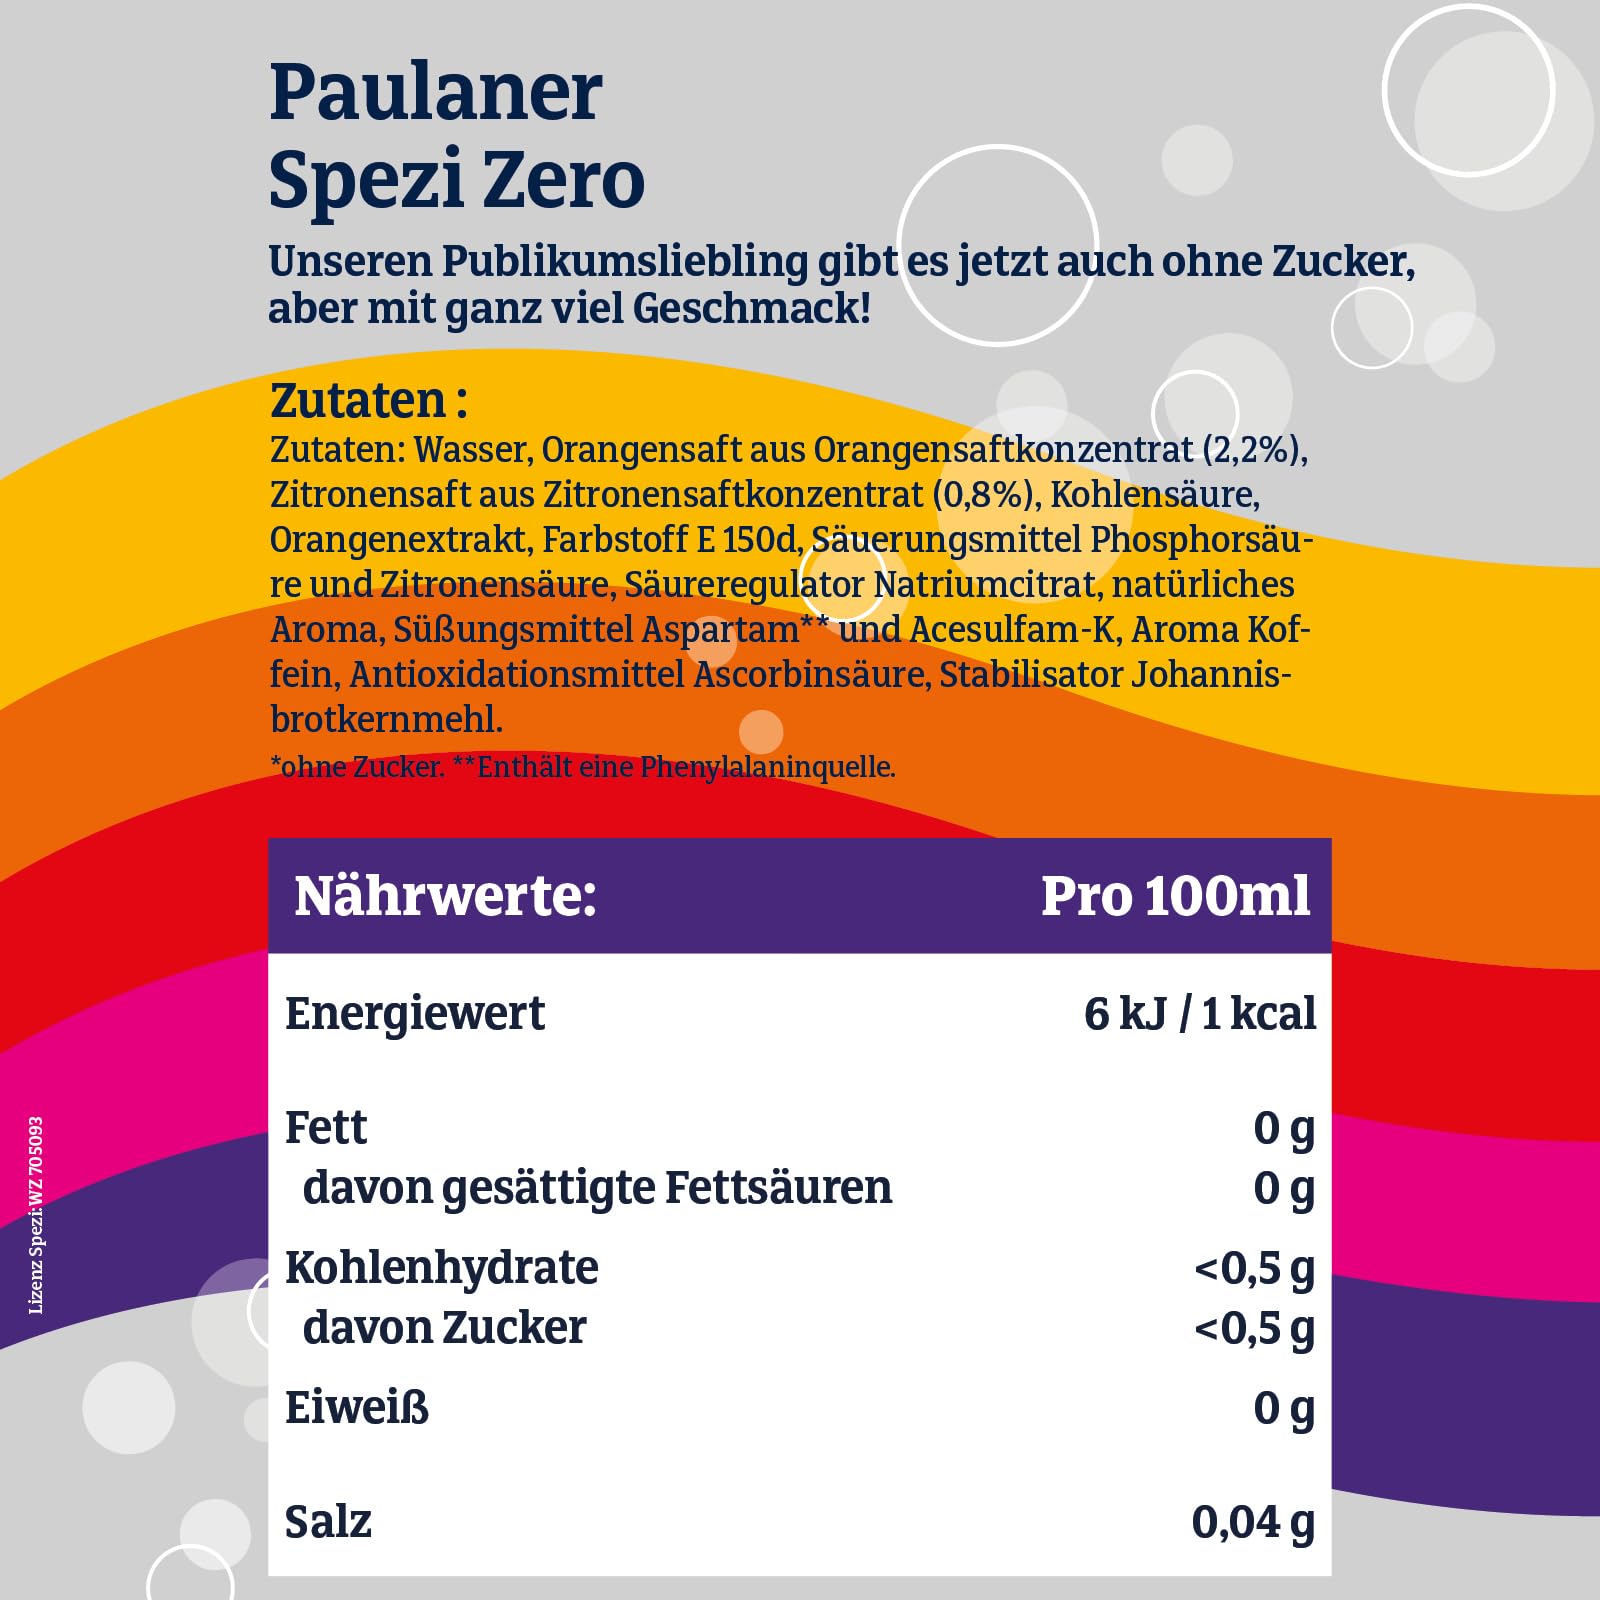 Paulaner Spezi Zero 0,5l- Koffeinhaltige Orangenlimonade mit Cola ohne Zucker